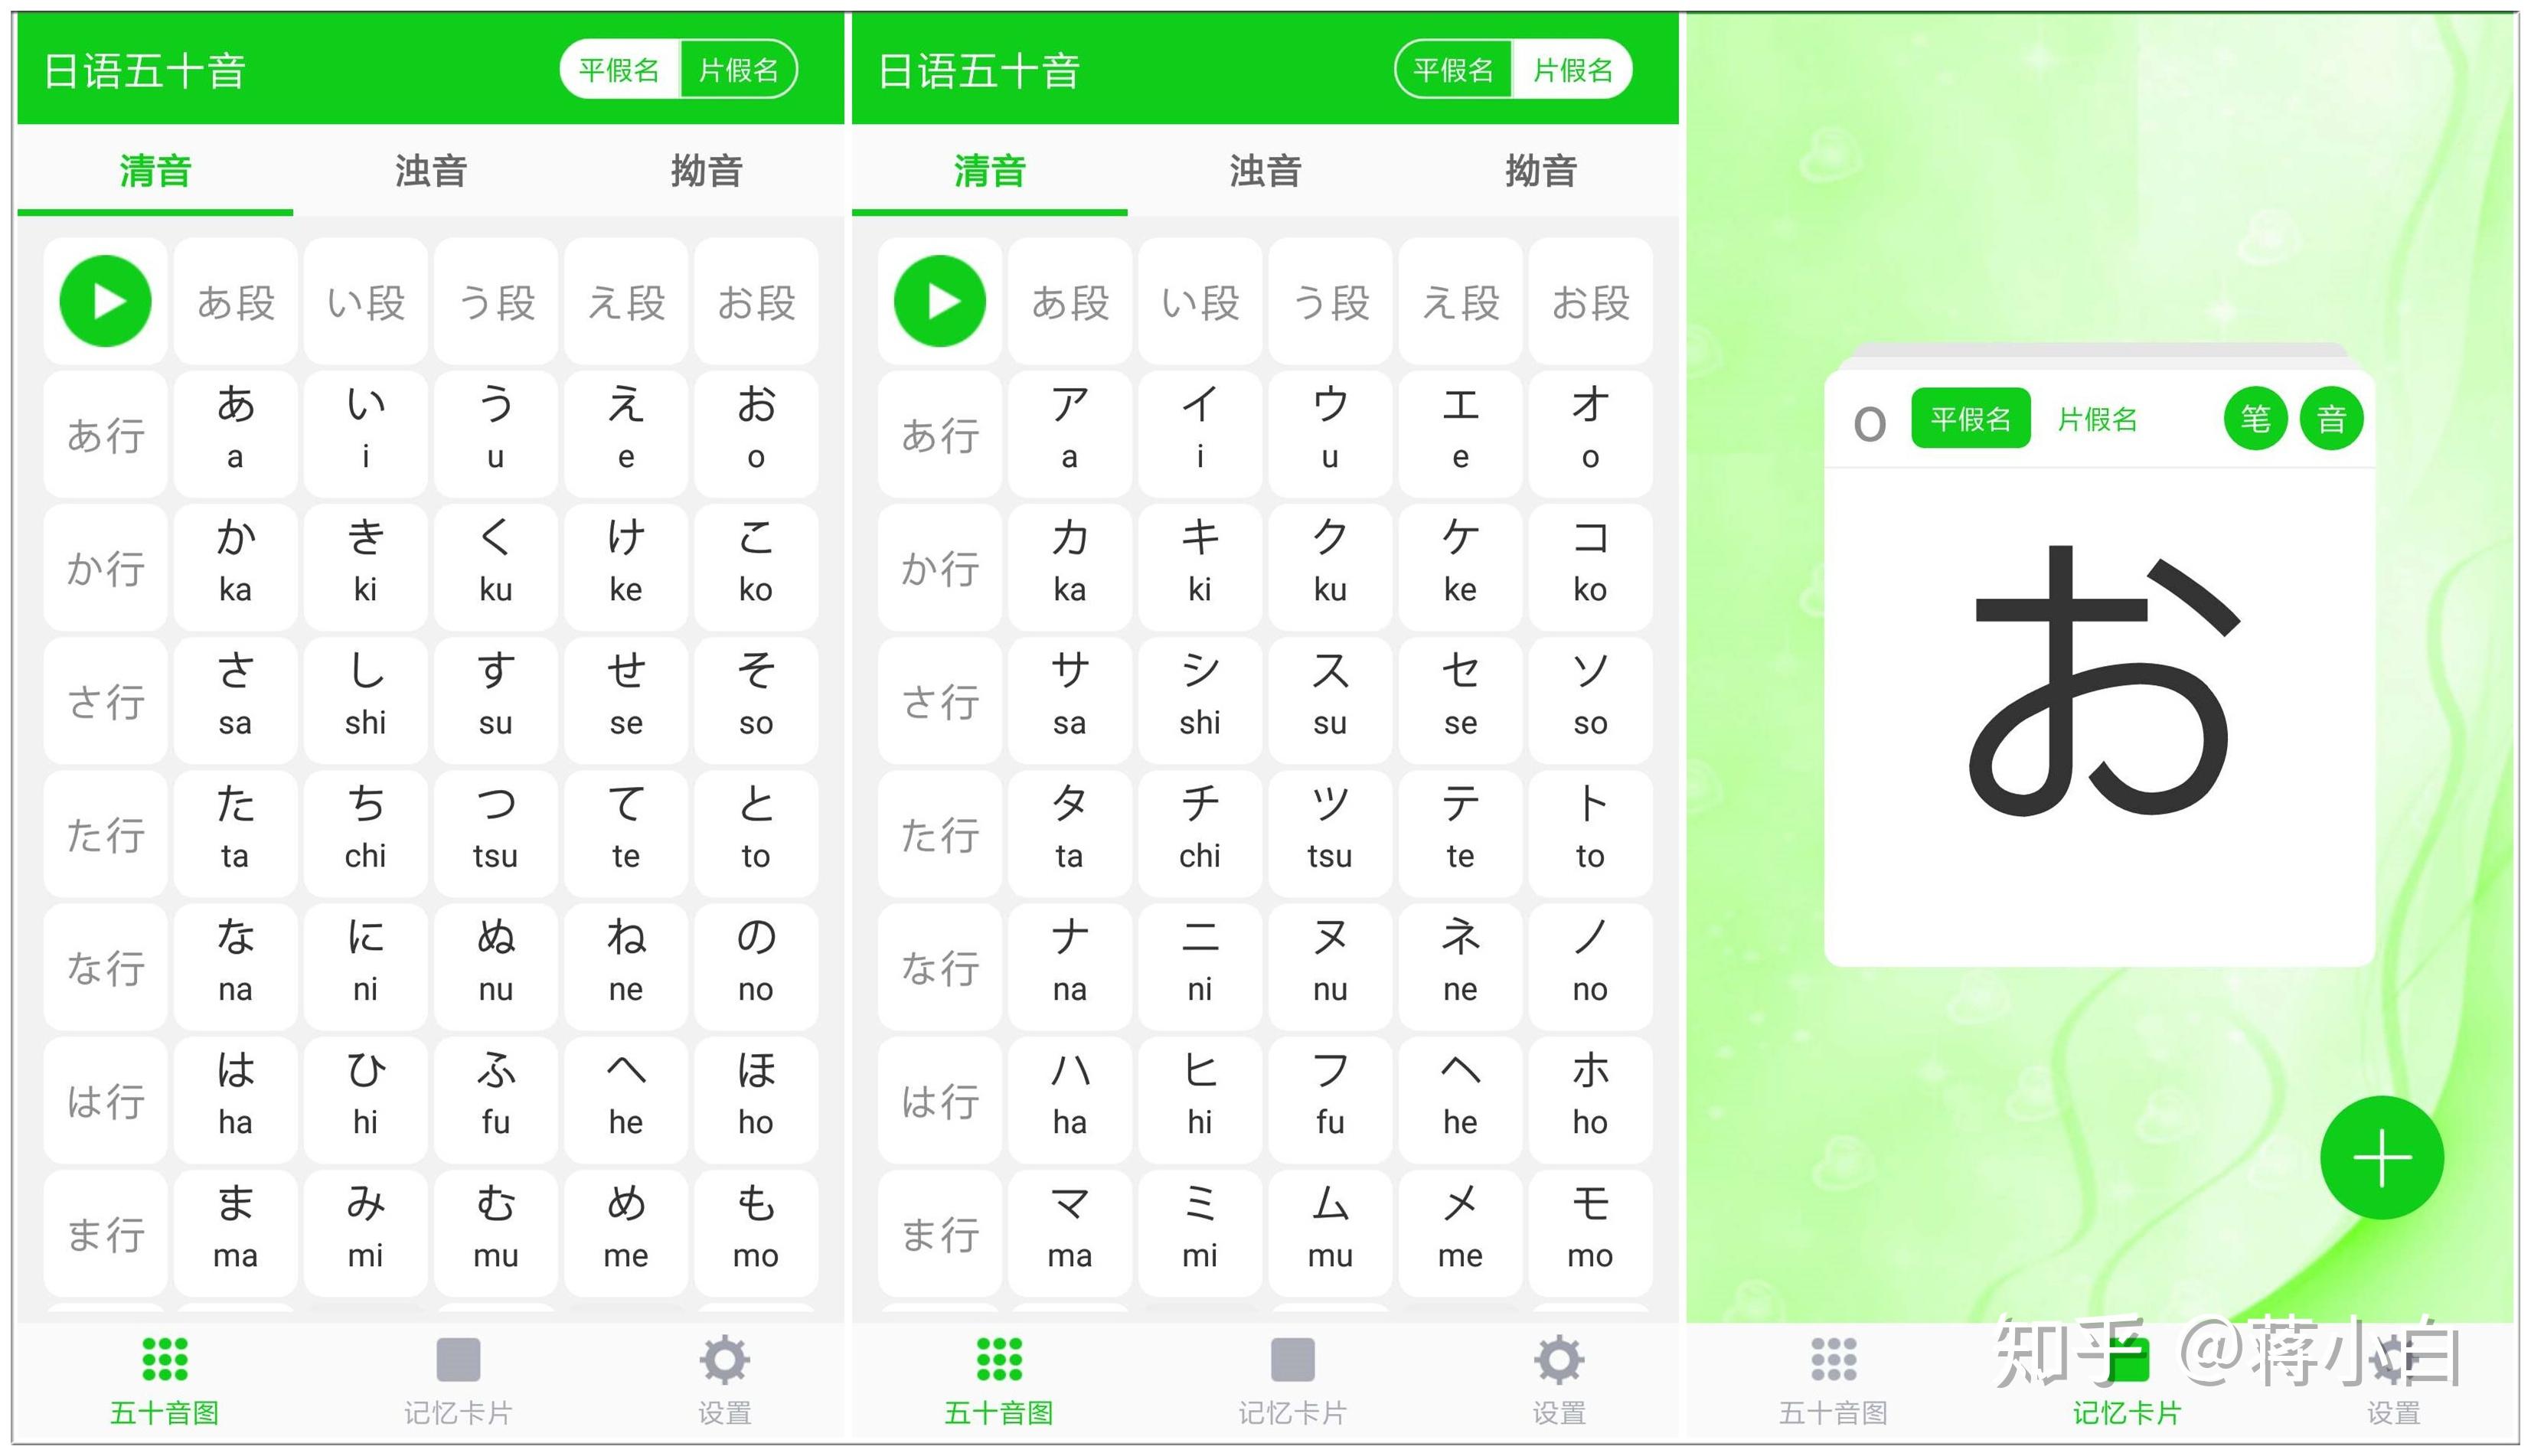 日语五十音是一款非常好用的零基础学习日语的app软件,帮助你轻松学习